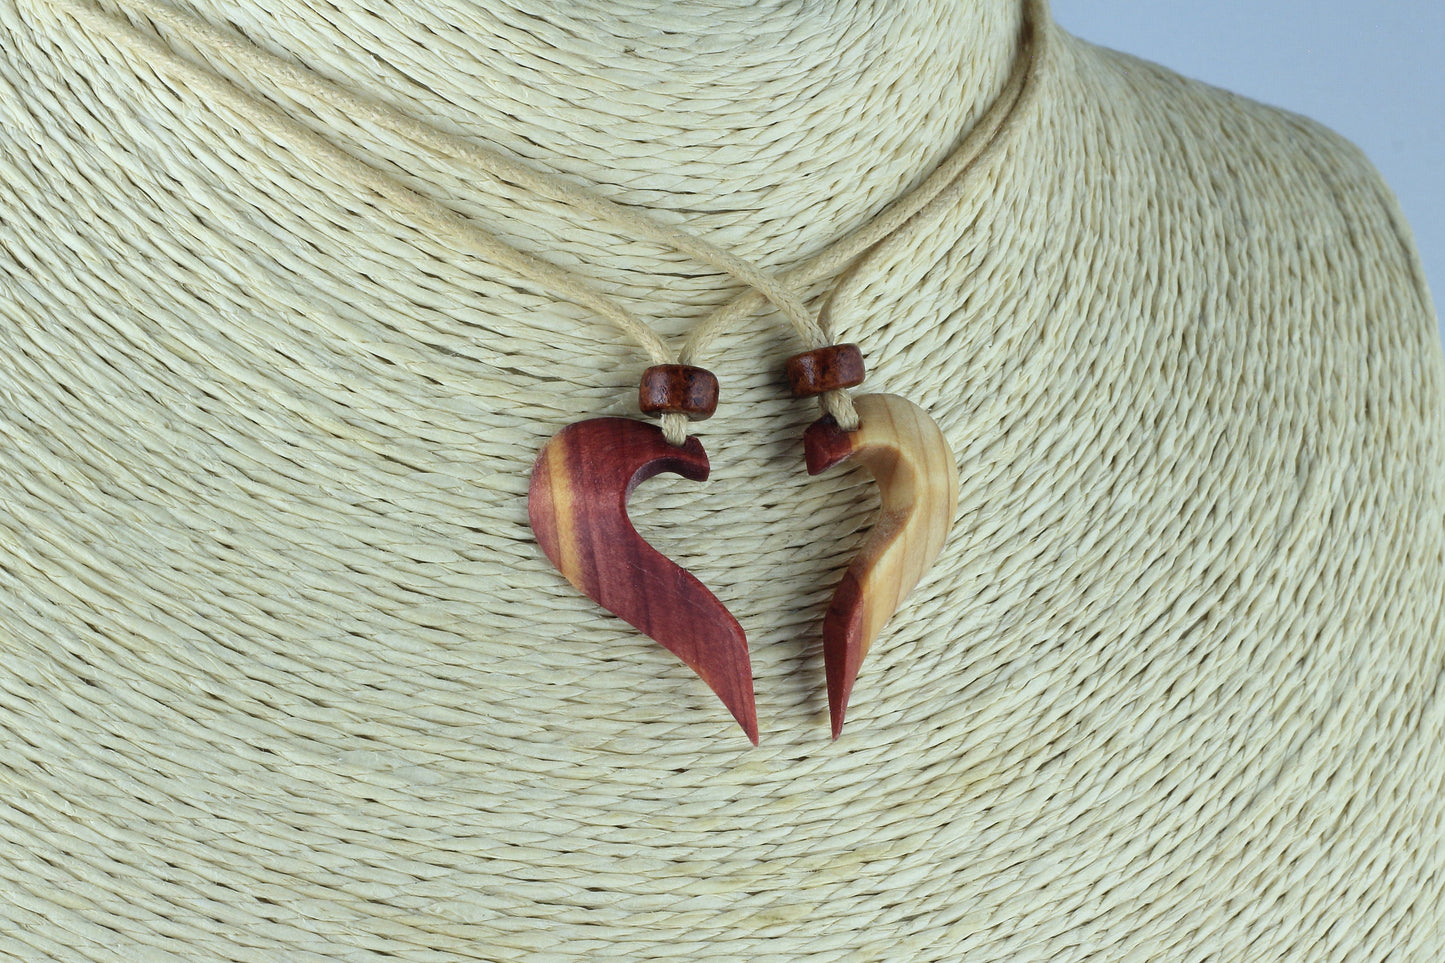 Couples necklace Couple necklace Boyfriend girlfriend necklace 2 pieces heart necklace Heart necklace wood necklace